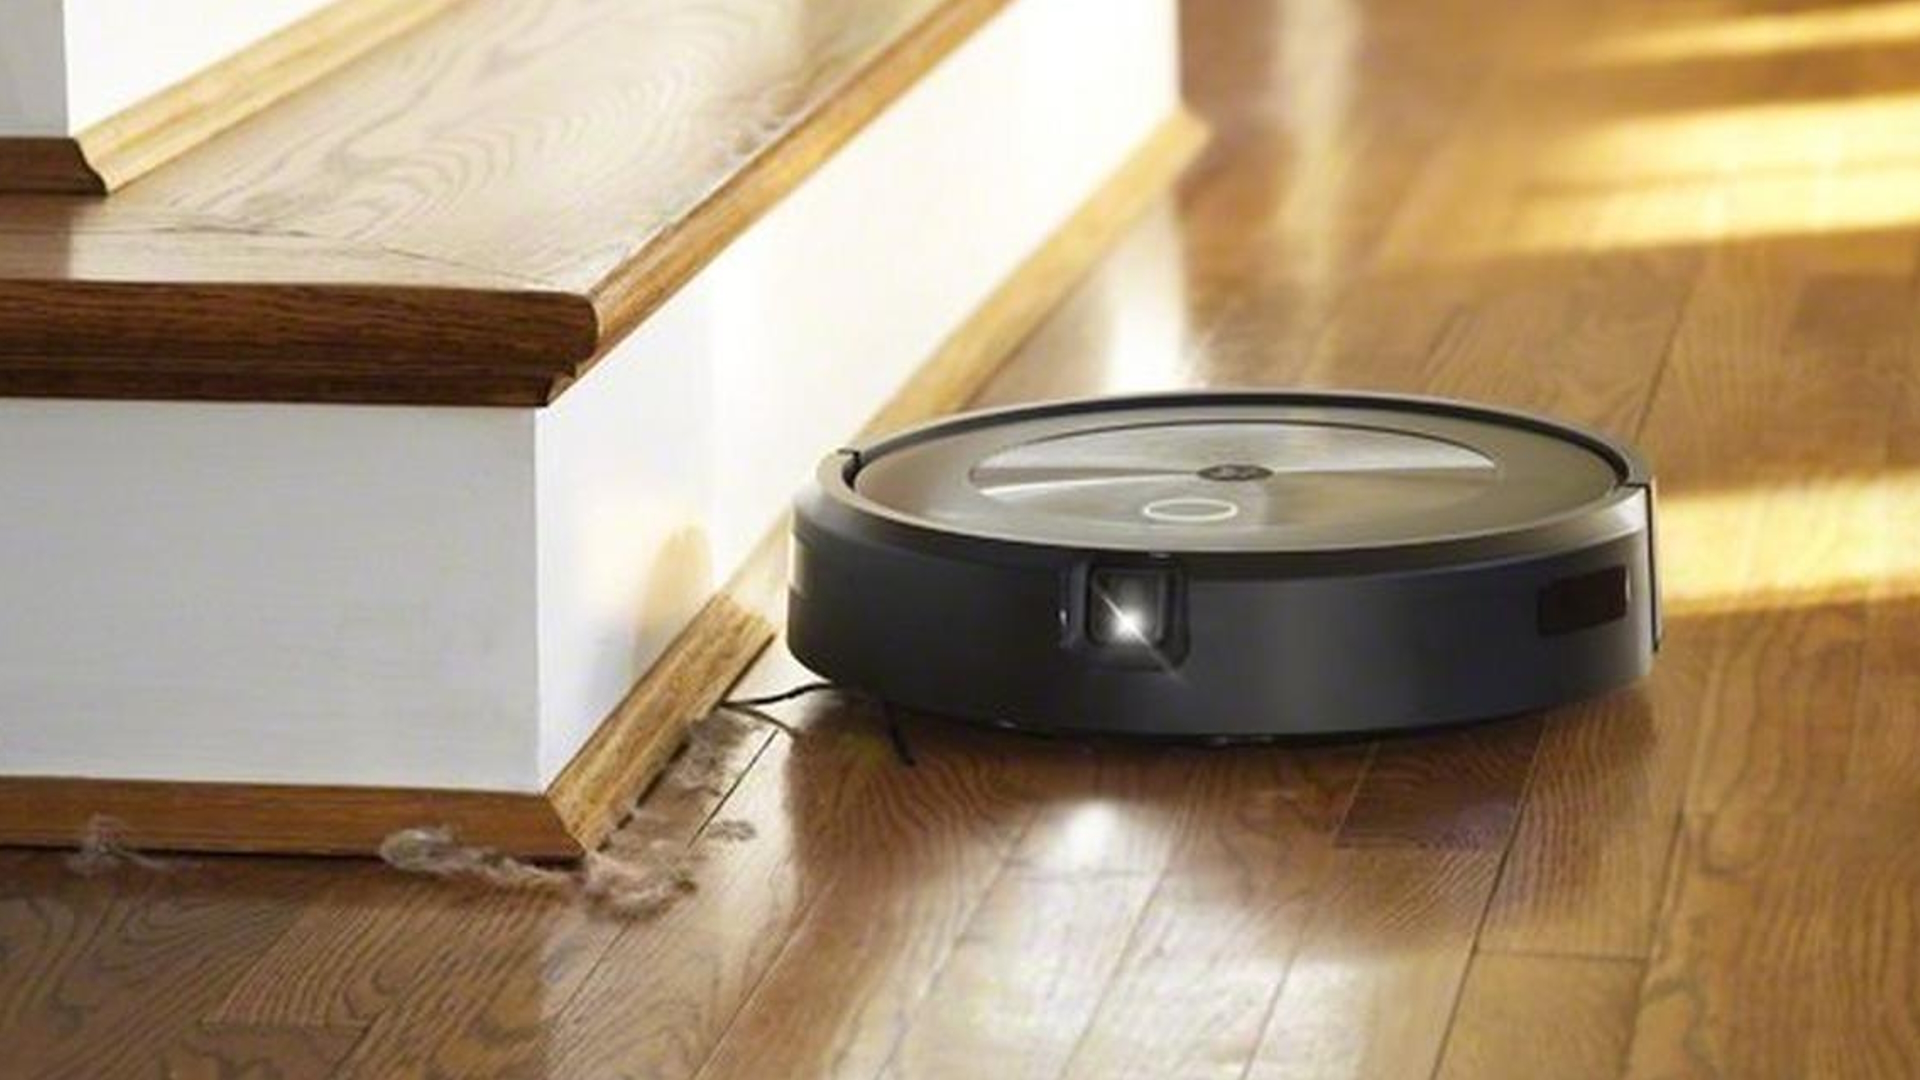 De iRobot Roomba J-serie AI-stofzuiger bij een houten trap.